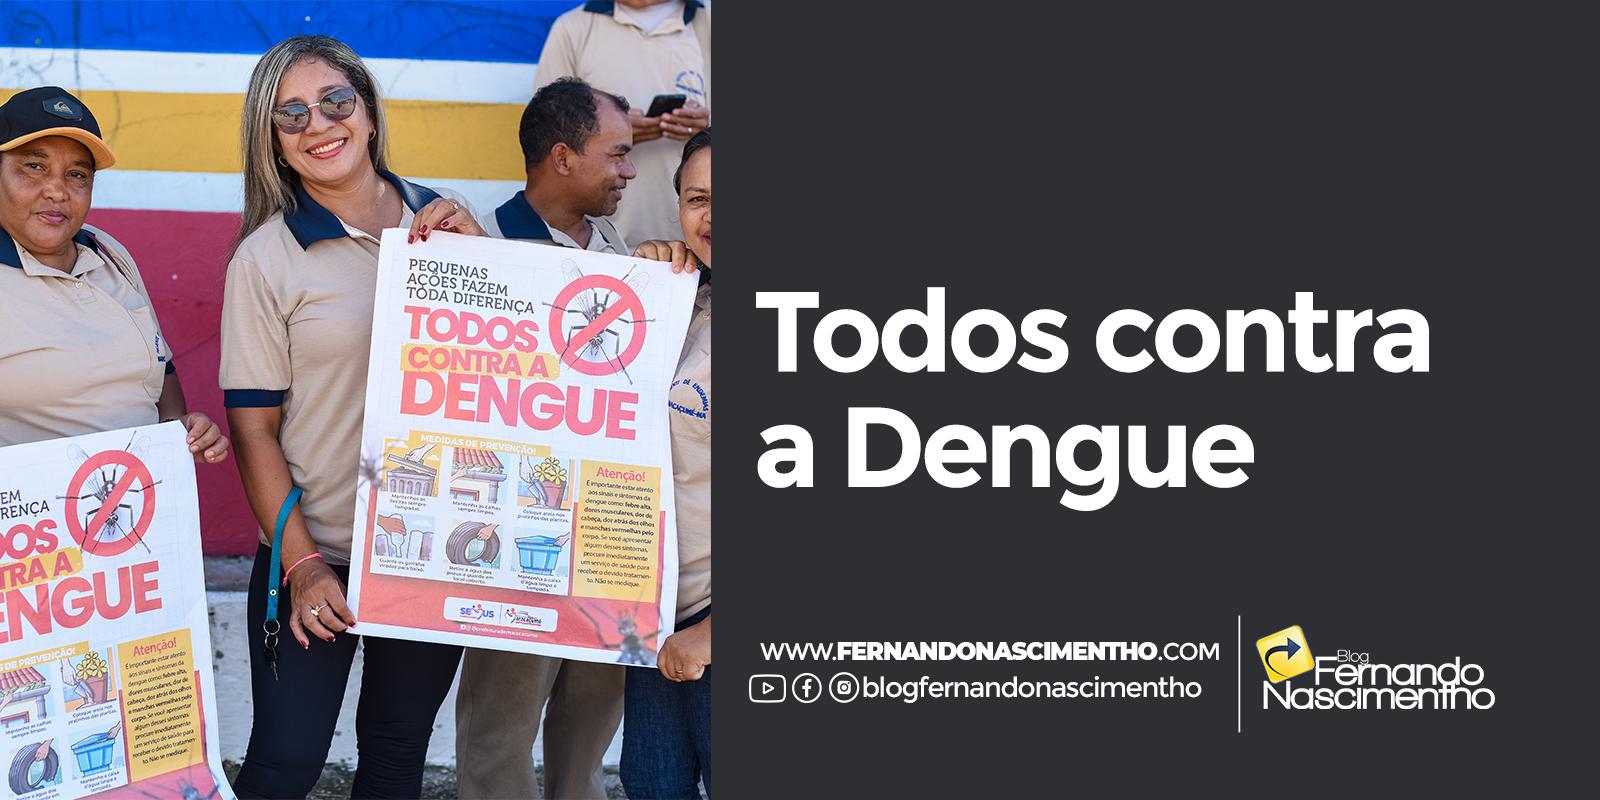 Combate a Dengue e missão de conscientizar